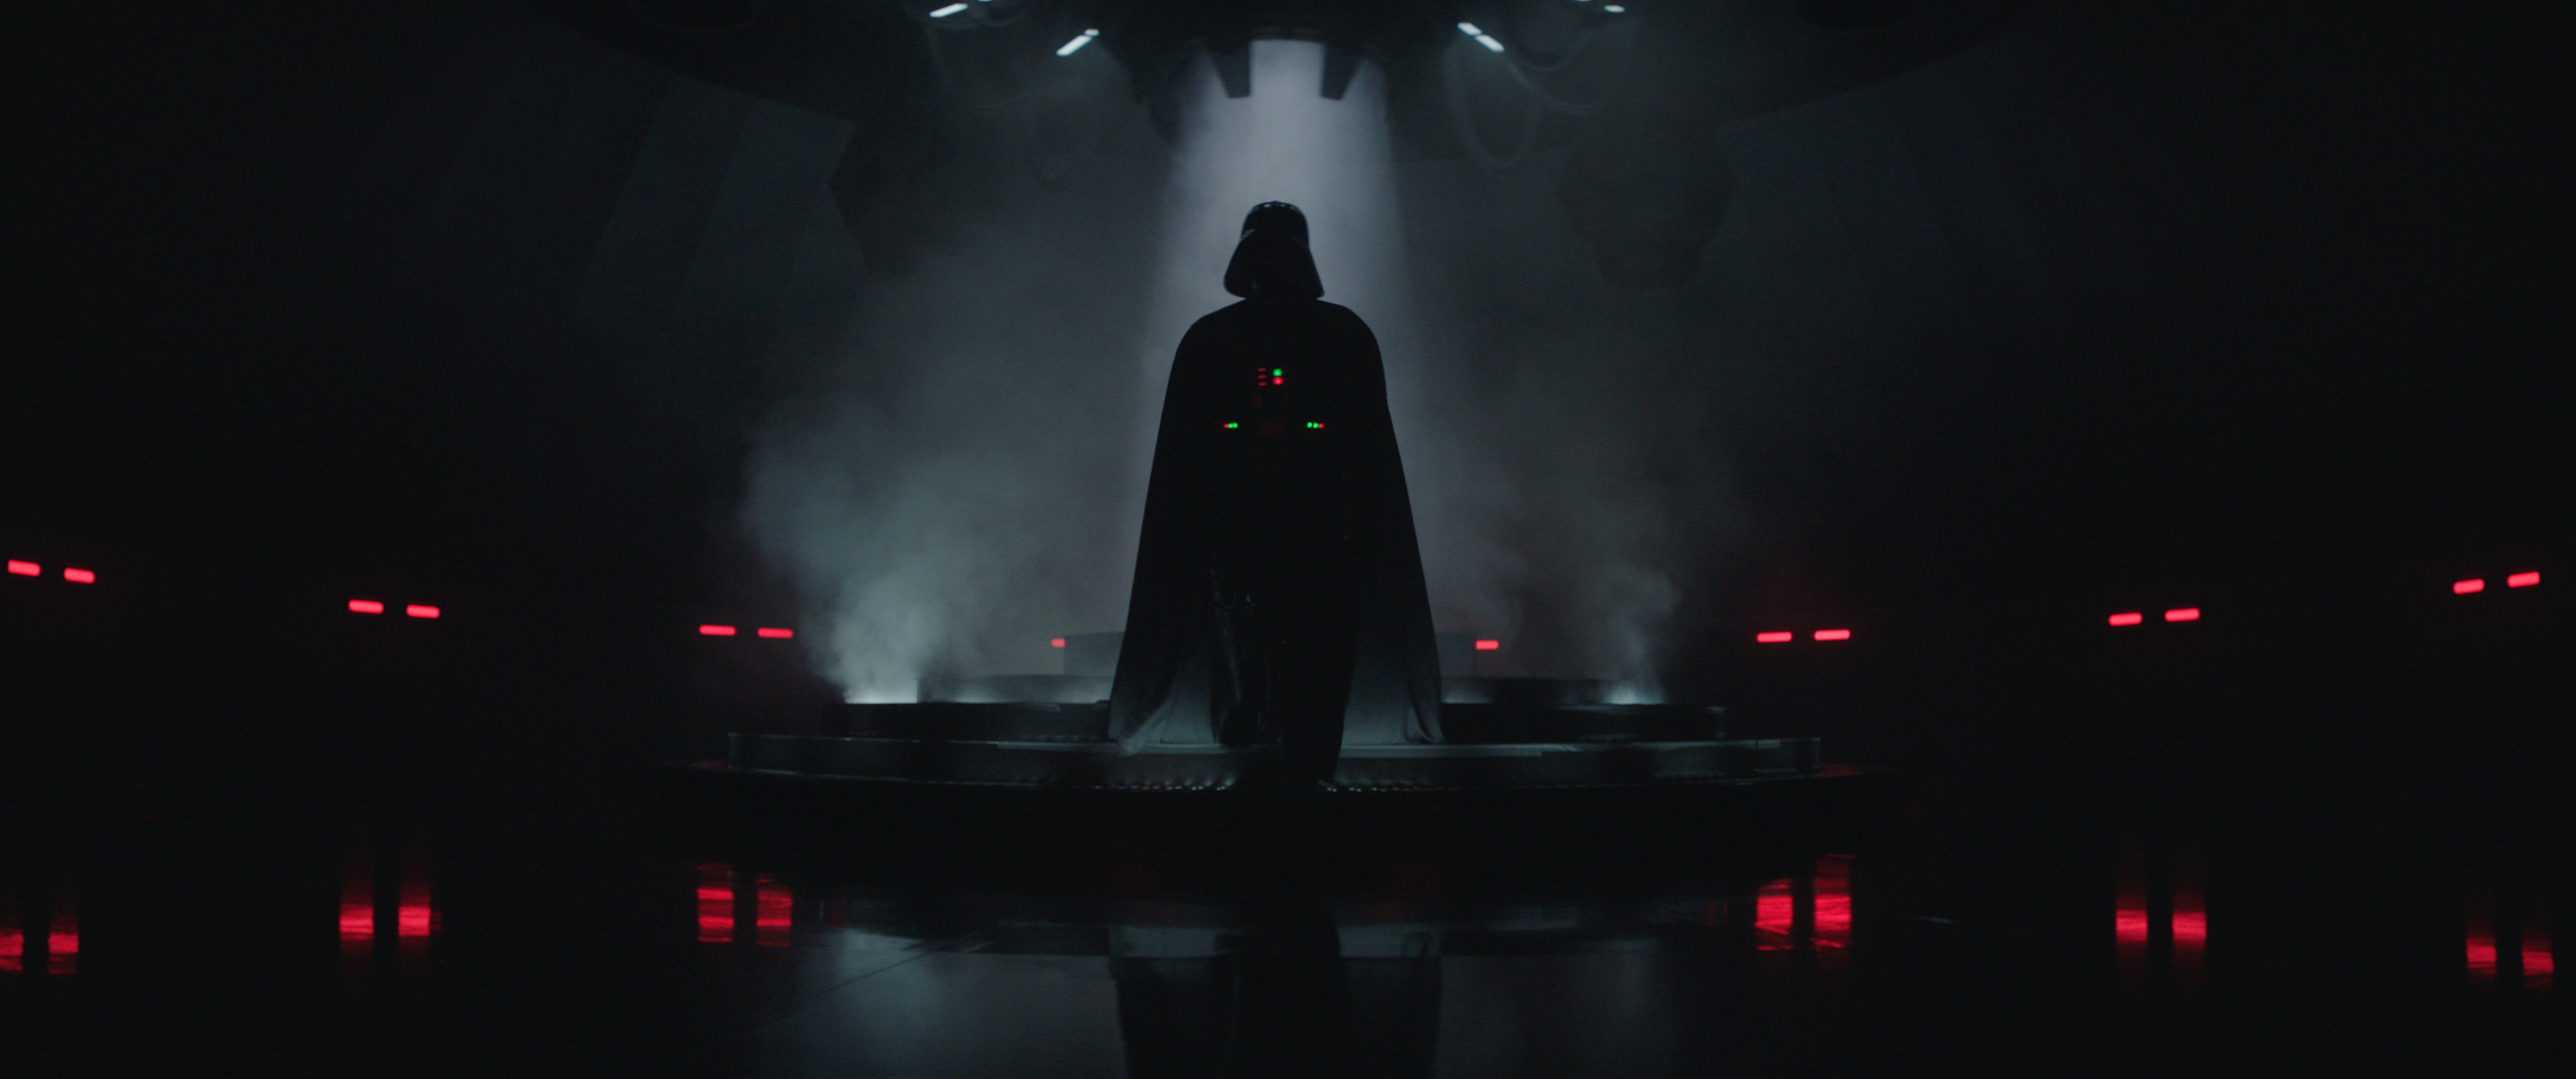 Kenobi Darth Vader